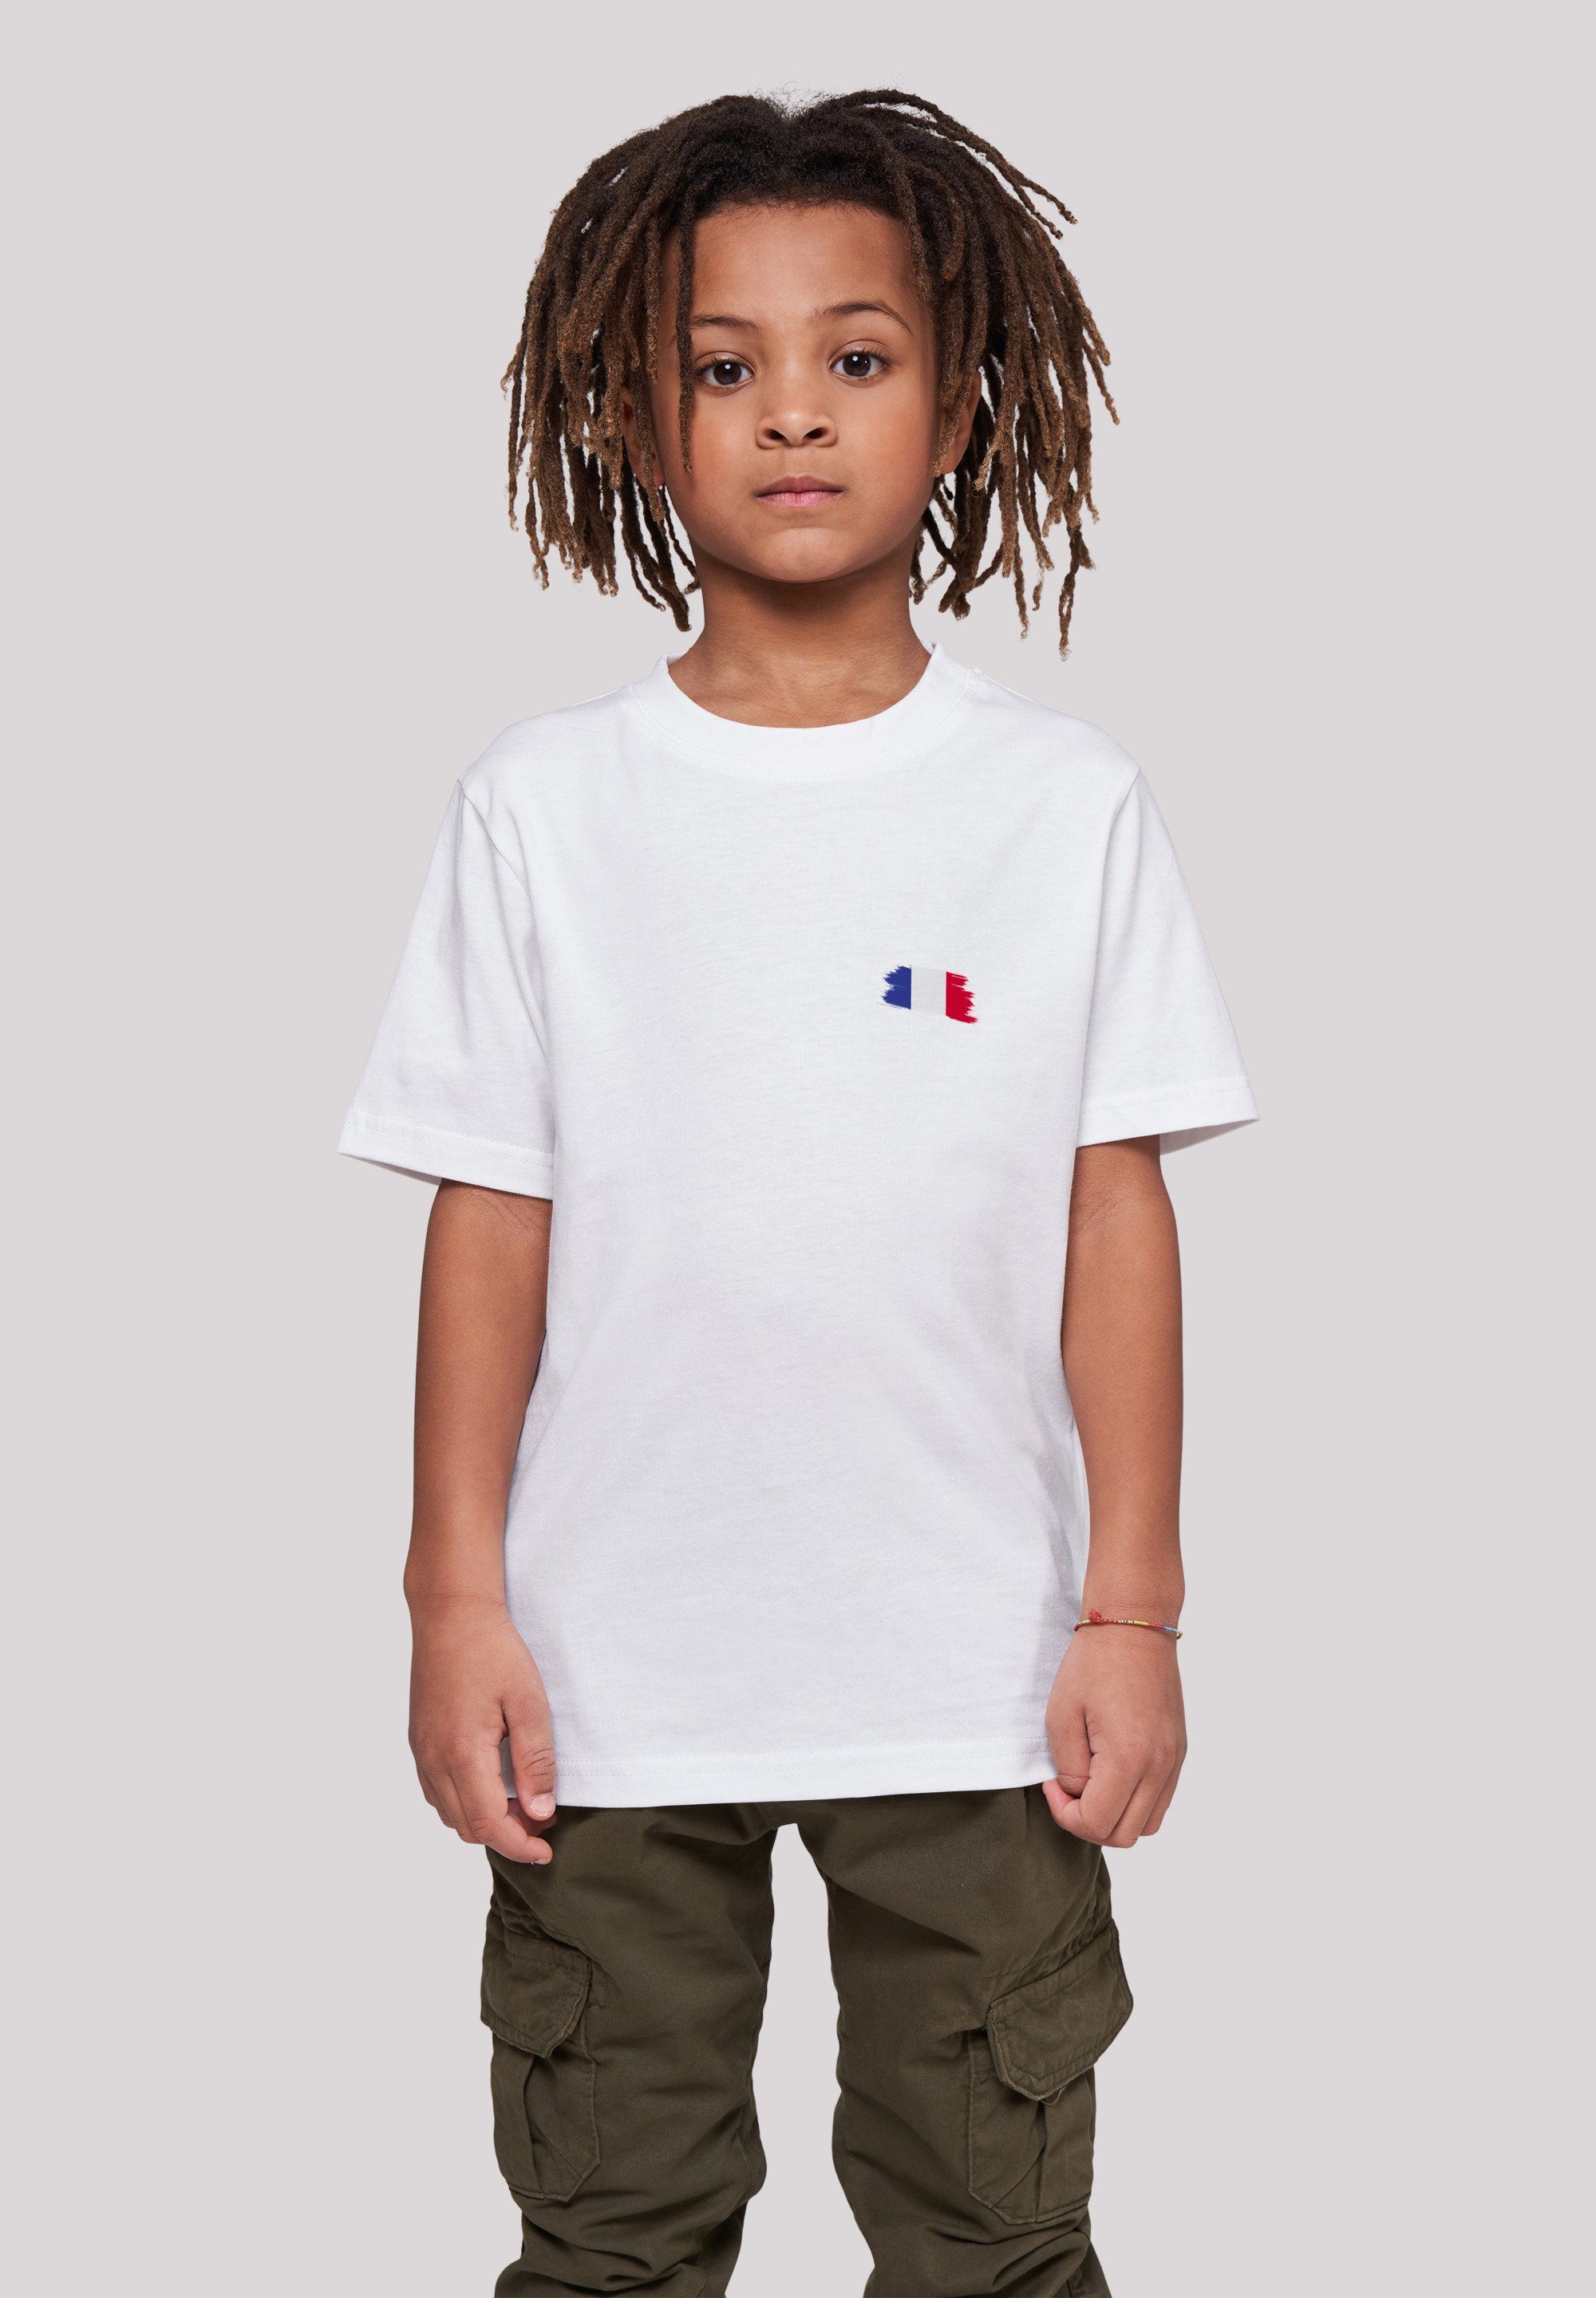 Preislimitierter Sonderverkauf F4NT4STIC T-Shirt France Frankreich Flagge 145 cm und ist groß Größe Das Fahne 145/152 Model Print, trägt